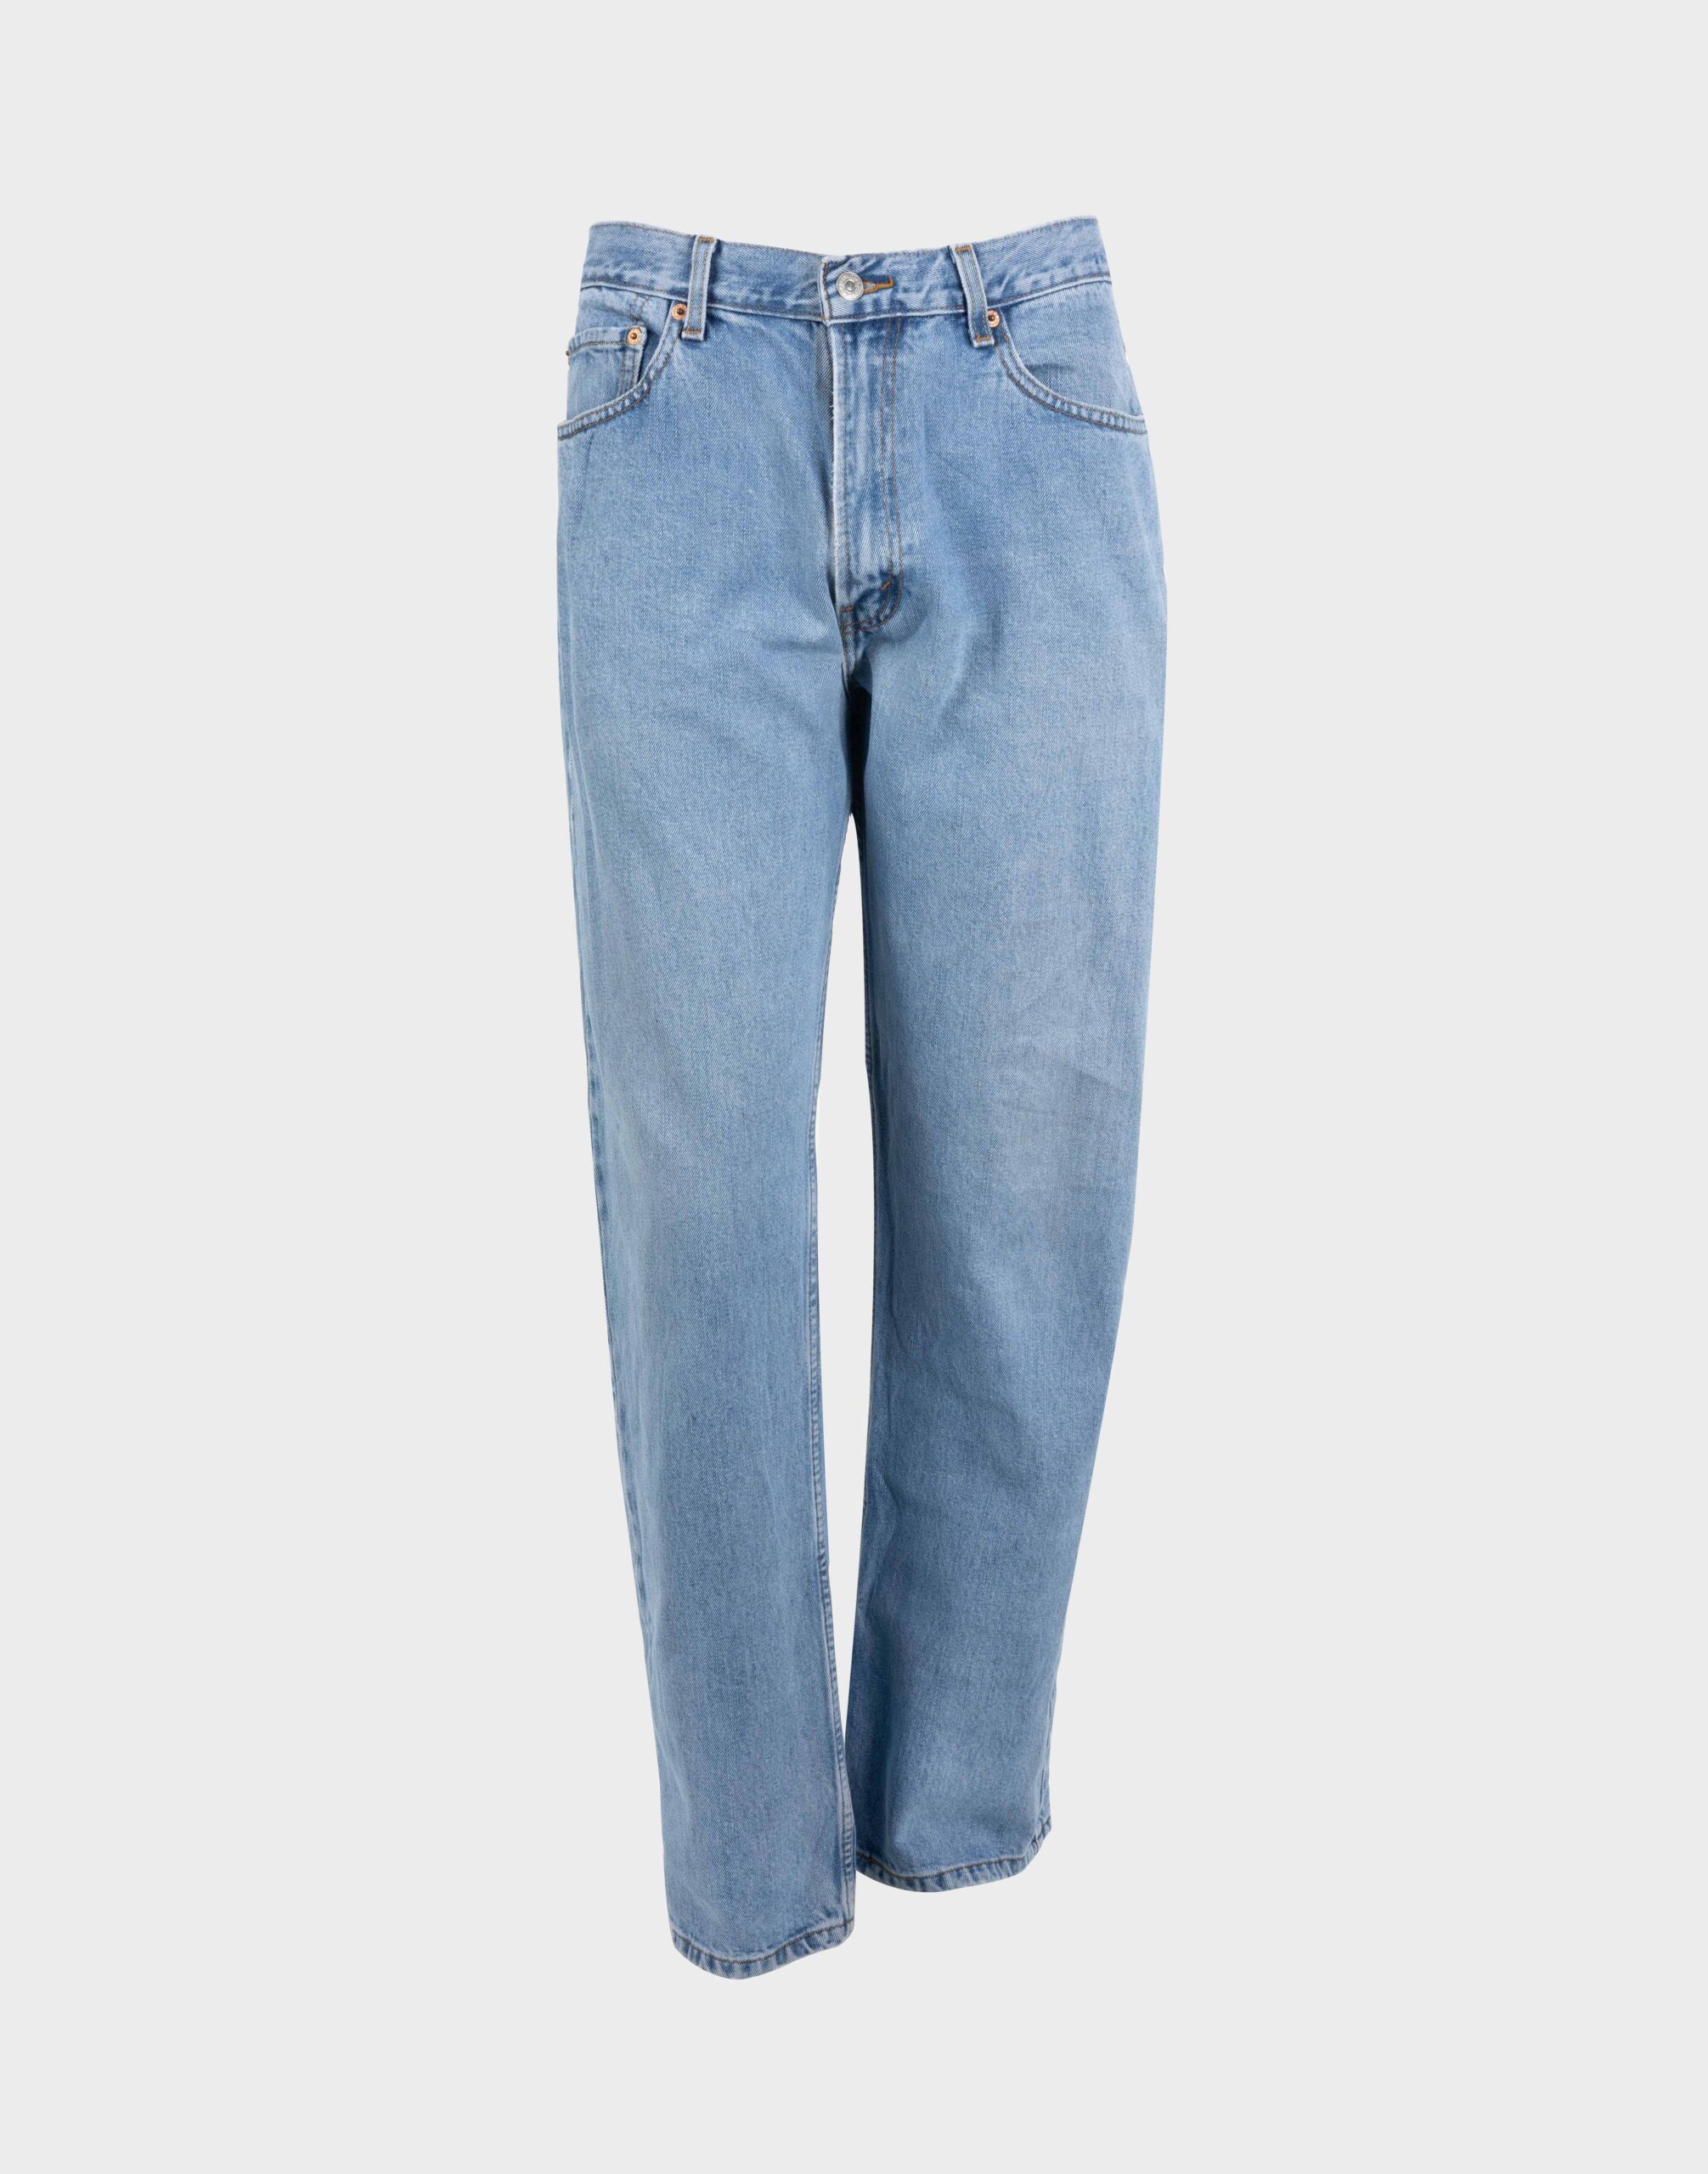 pantaloni jeans levis da uomo modello 505 lavaggio chiaro fotografati su manichino ghost